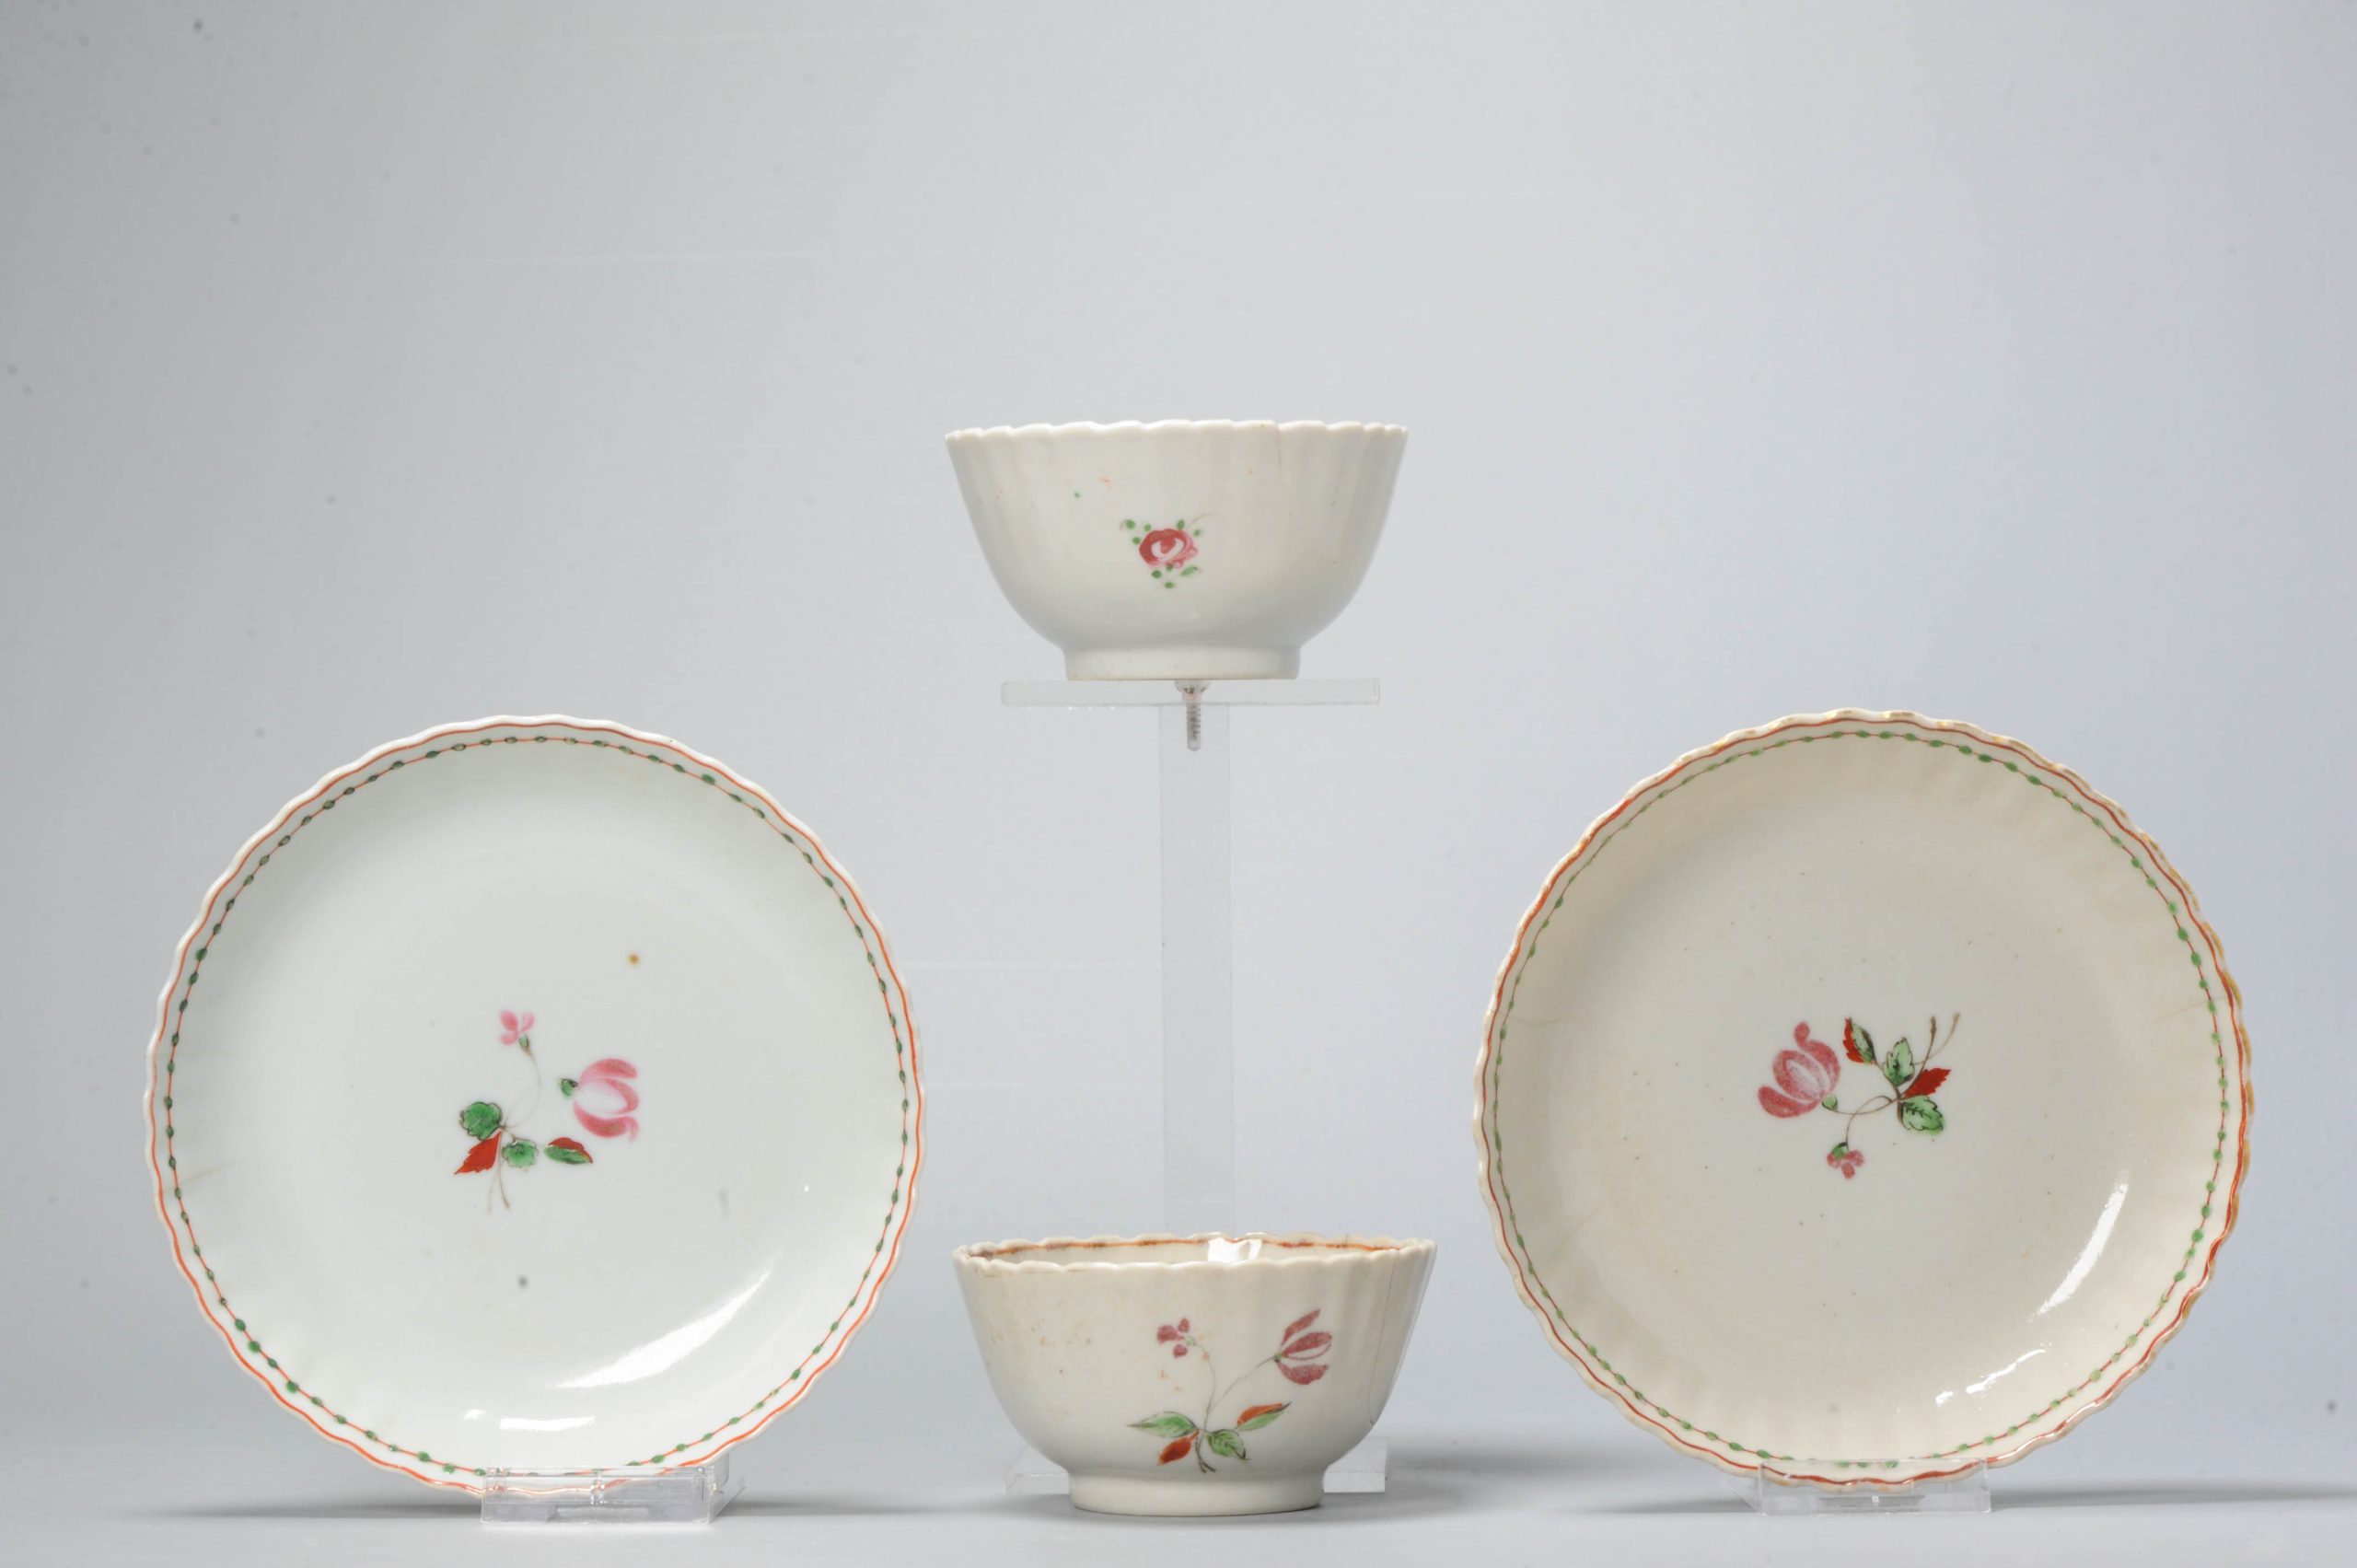 Antique 18C Chinese Porcelain Tea Set China Chine de Commande Qianlong Period